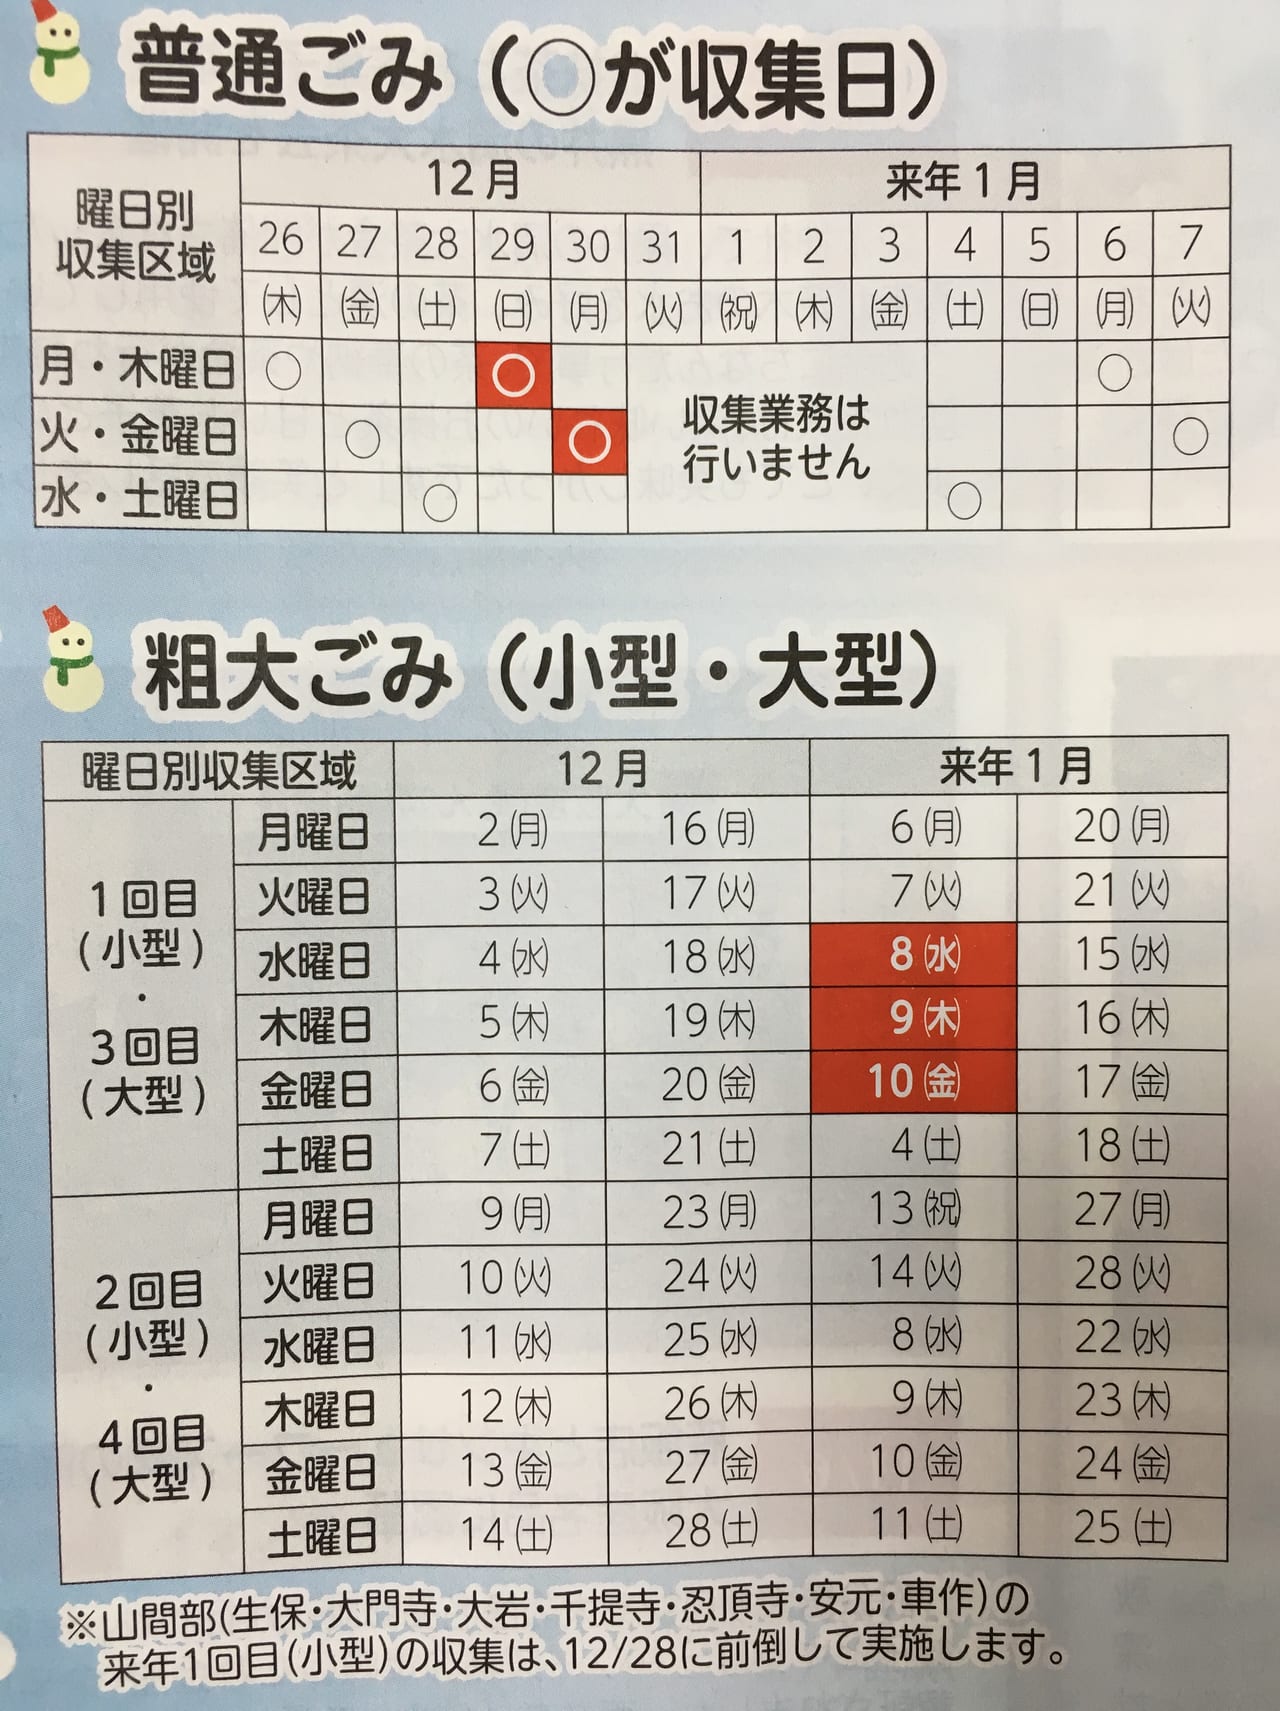 茨木市 2019年もあと少し 年末年始のゴミ収集日程チェックをお忘れなく 号外net 茨木